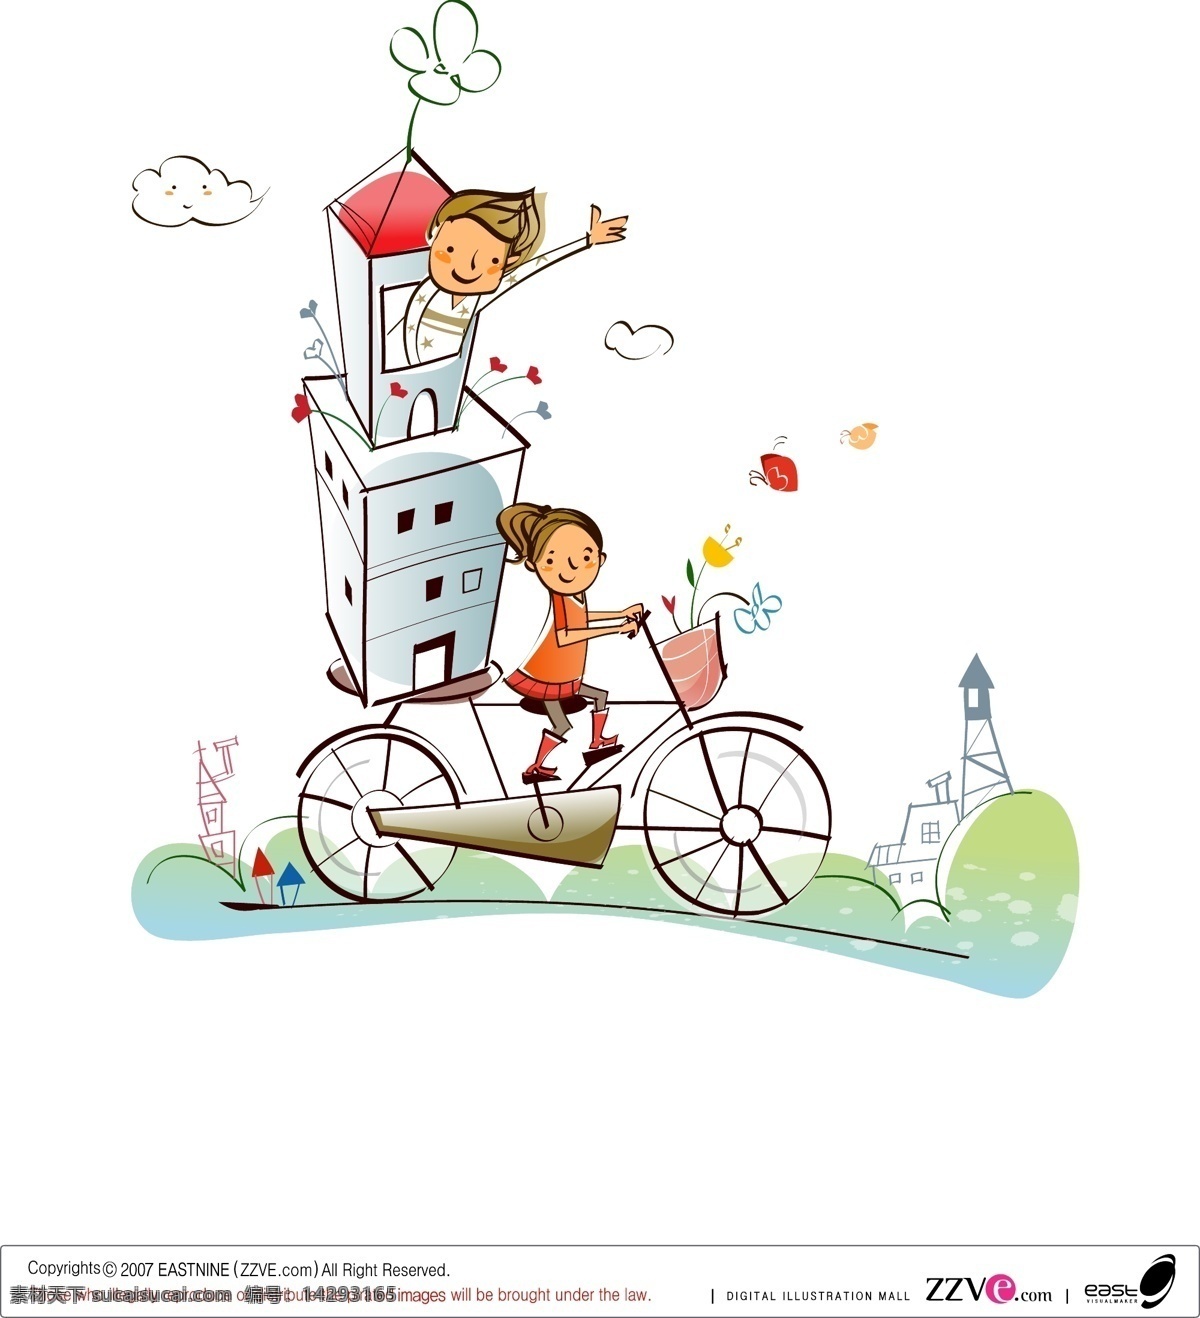 童话 般 王国 高清 矢量图 源文件 房子 矢量插画 骑车的小女孩 矢量人物